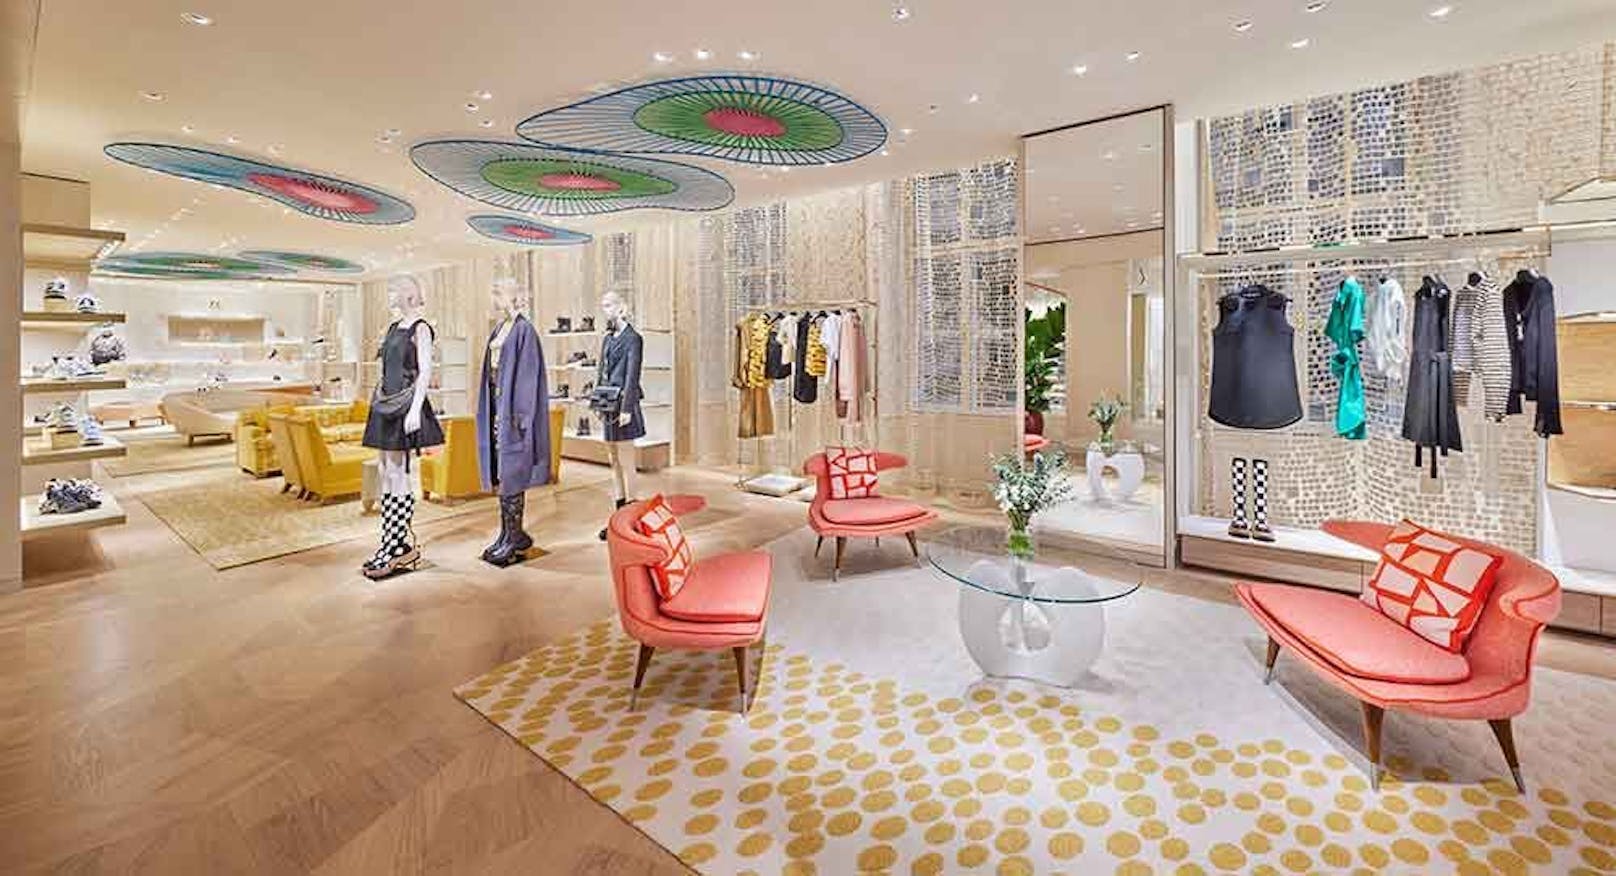 Louis Vuitton "übernimmt" das Gebäude wo früher Edel-Supermarkt "Meinl am Graben" residierte.